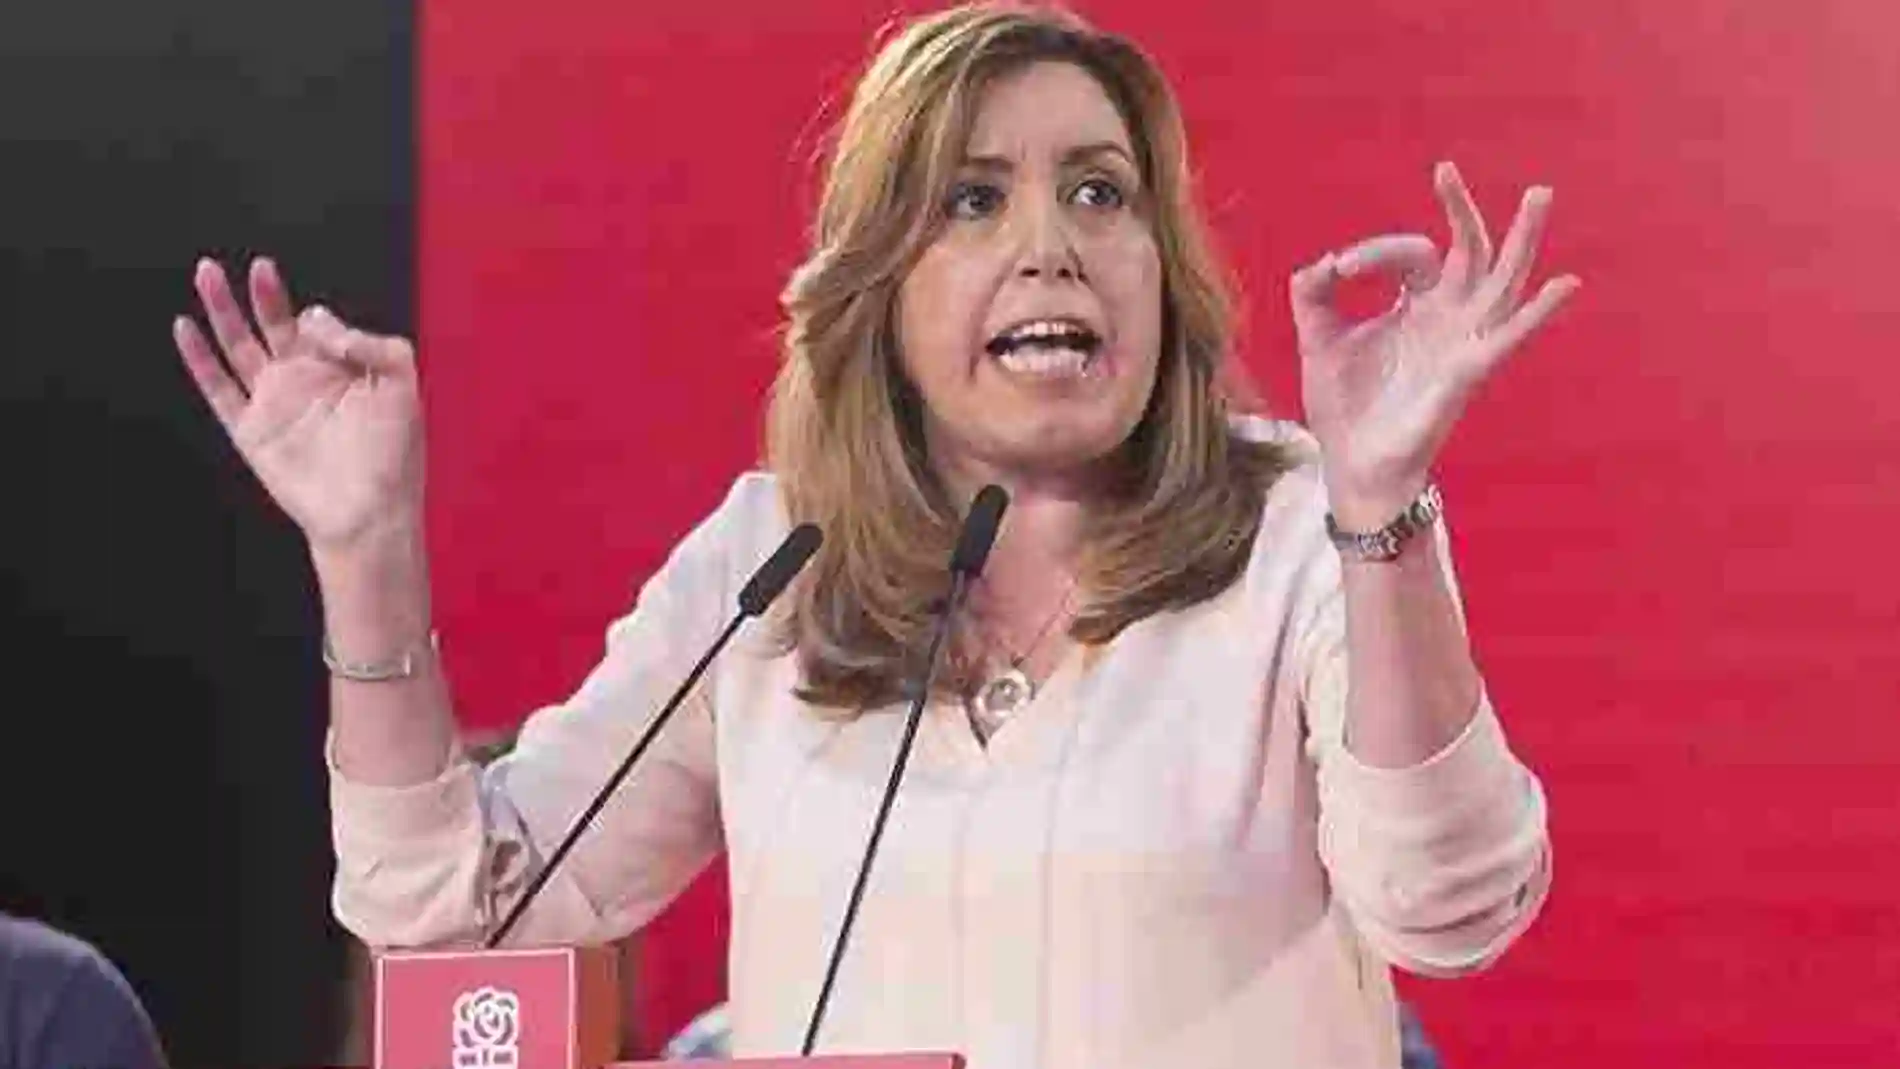 Susana Díaz, pronuncia su discurso durante el acto político que los socialistas celebraron ayer por la tarde en el anfiteatro de Salobreña.